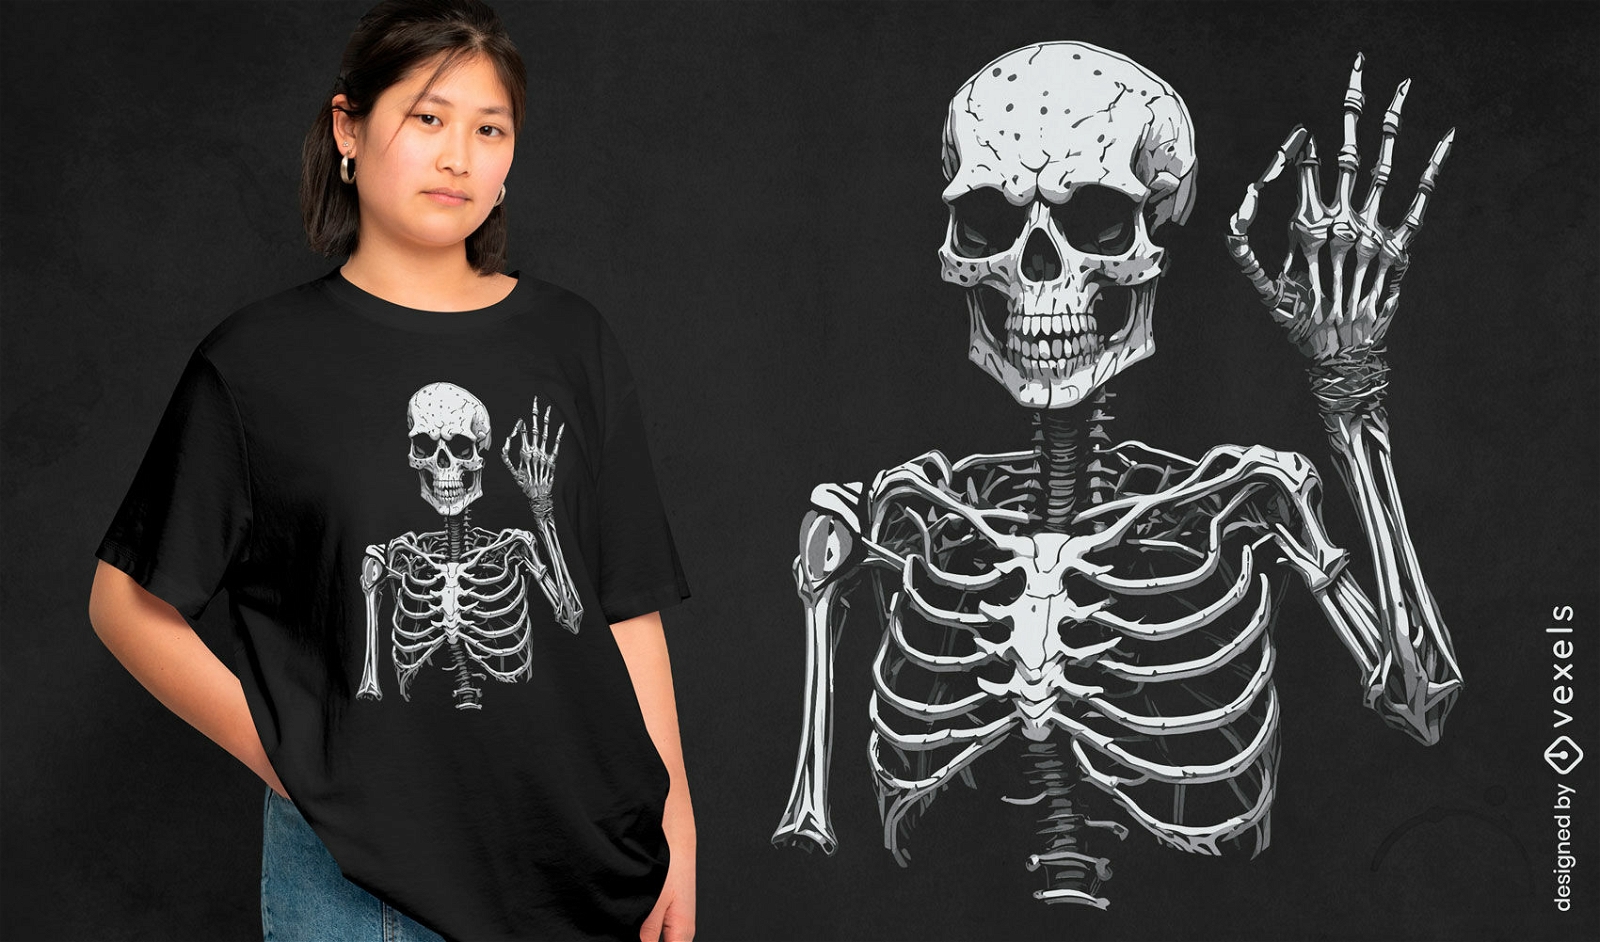 Skeleton doing Ok sign t-shirt design